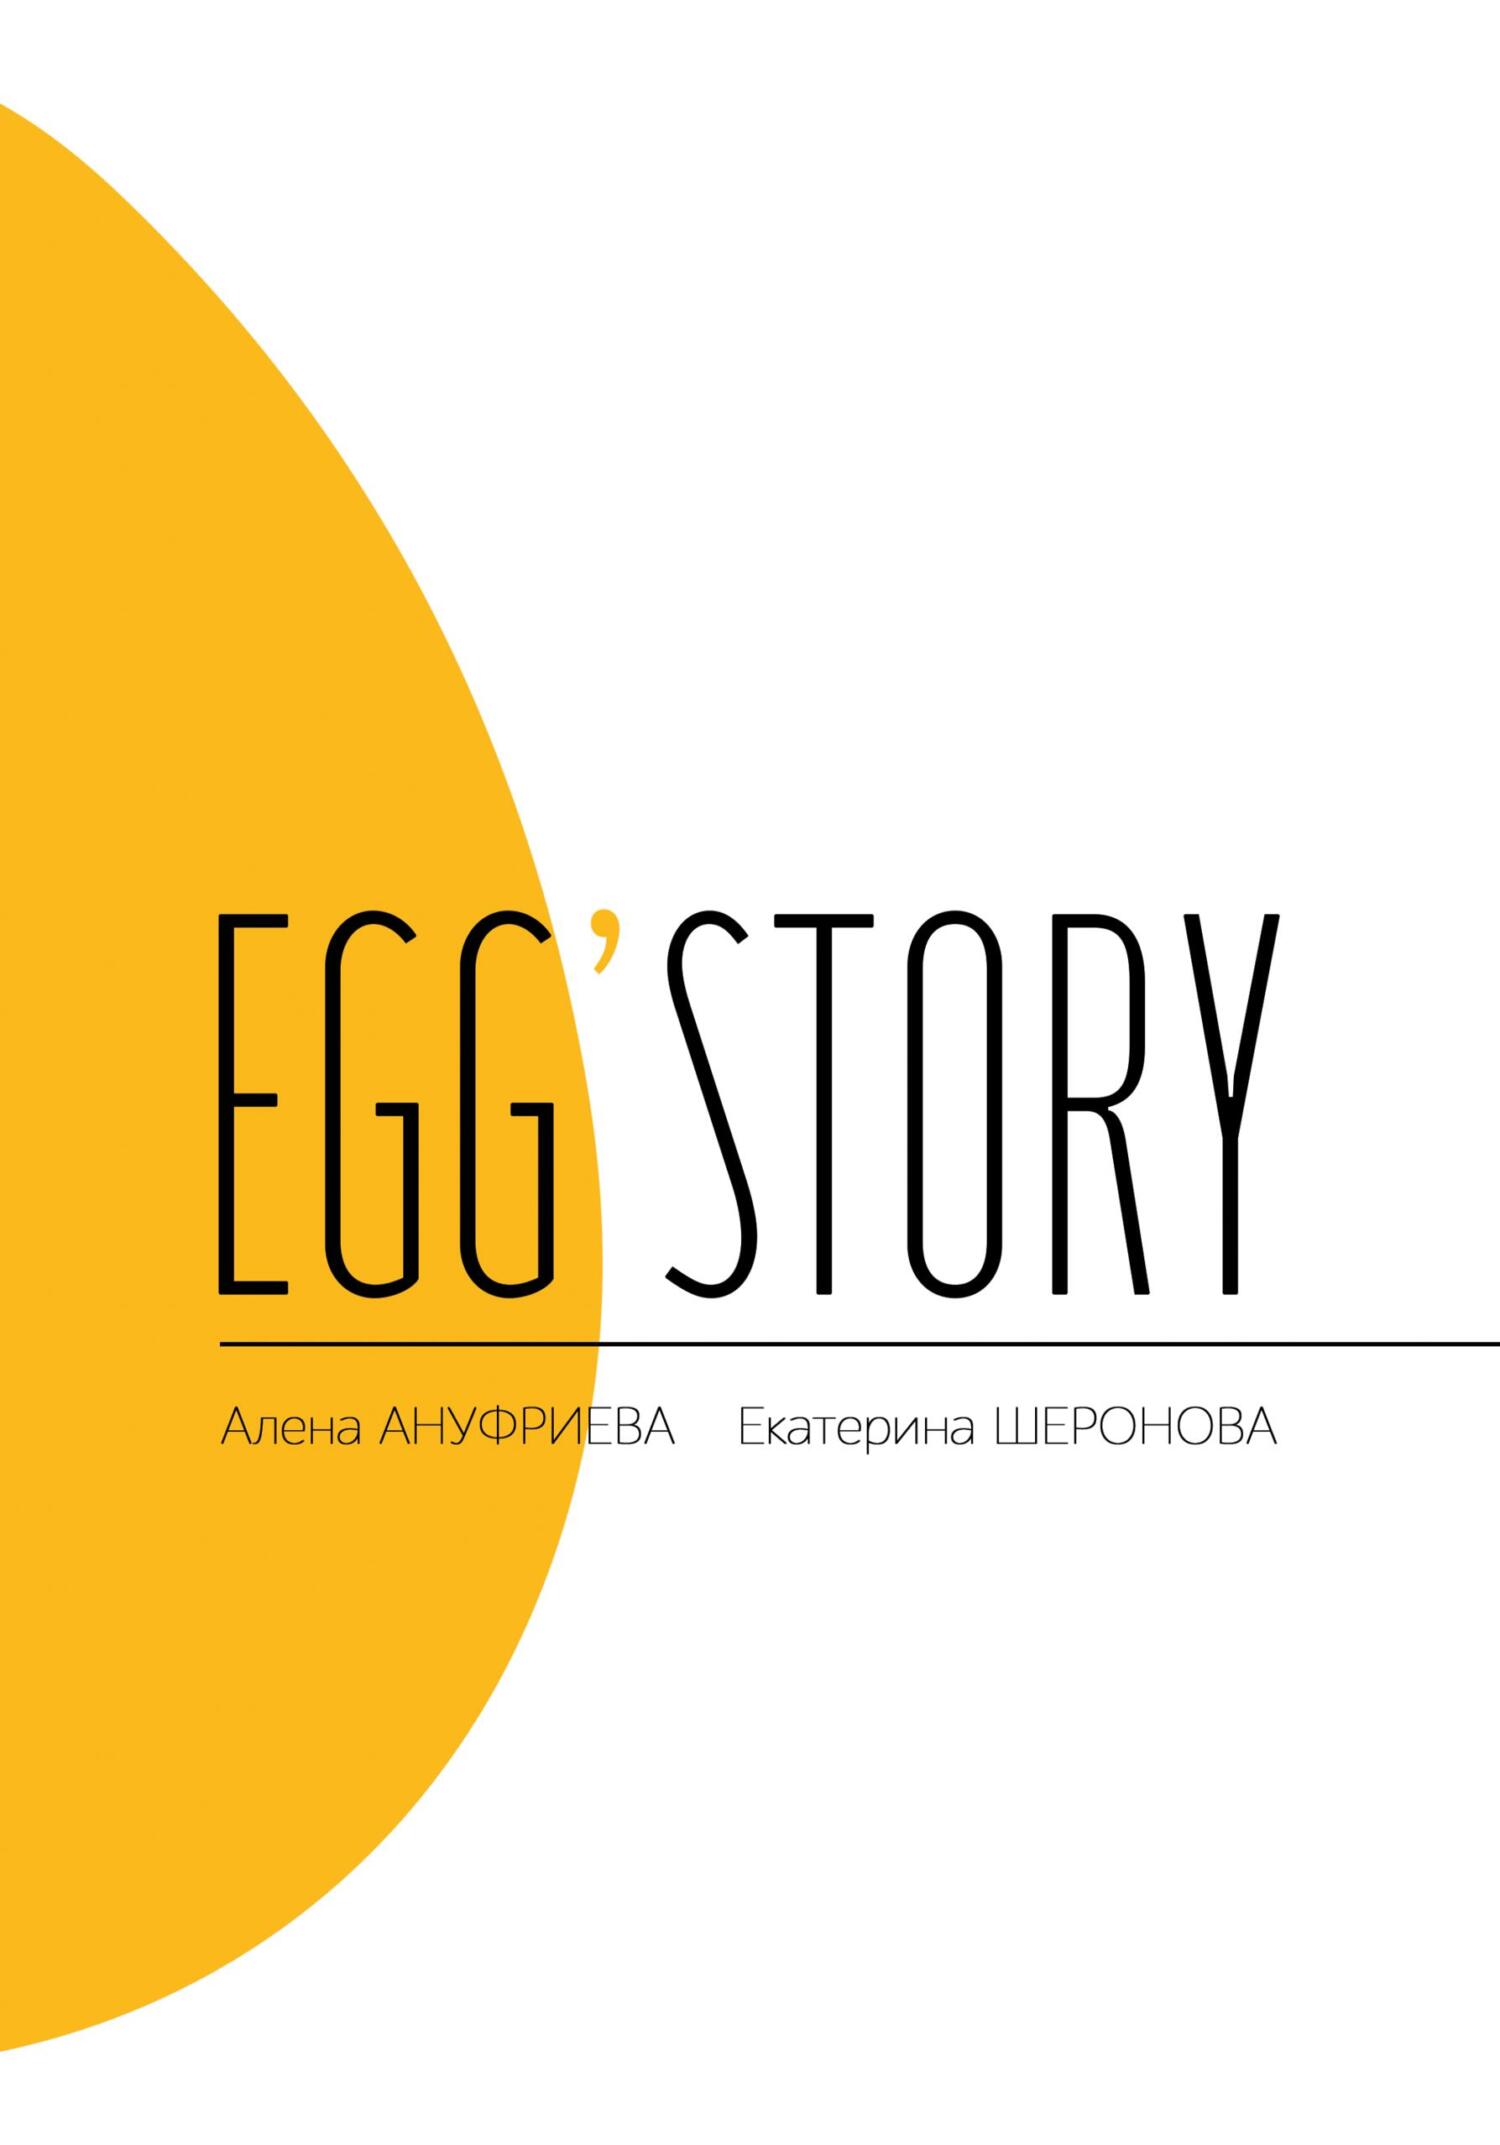 Egg'story